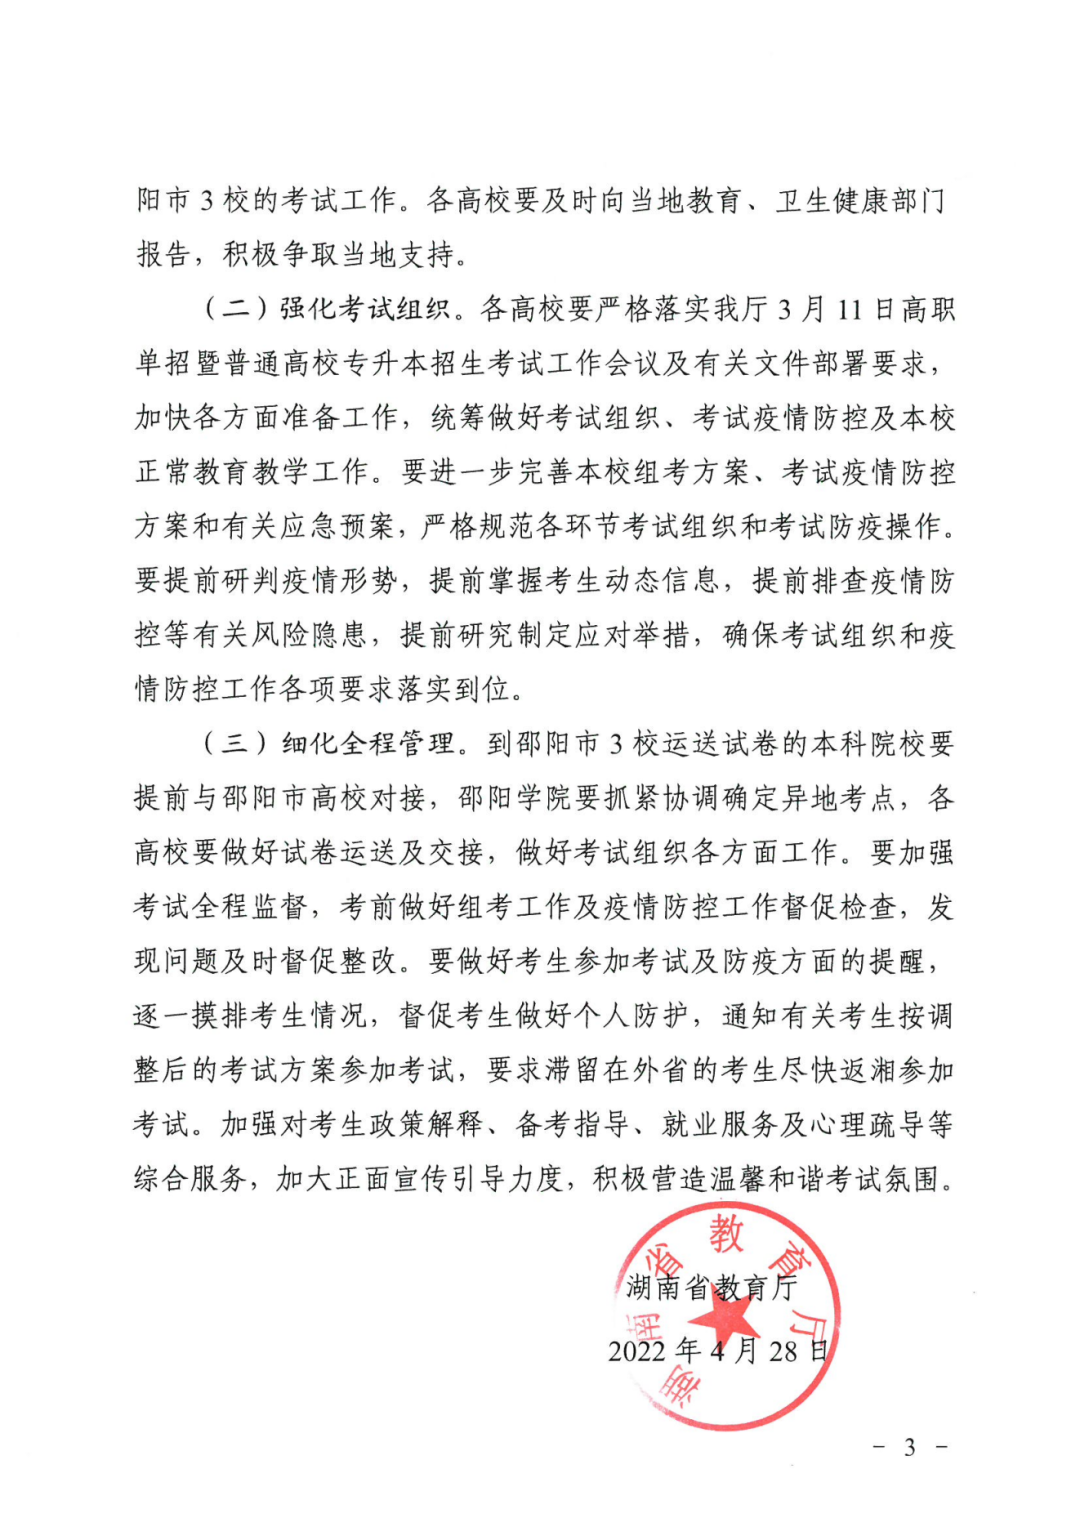 关于做好2022年湖南专升本招生考试工作的通知